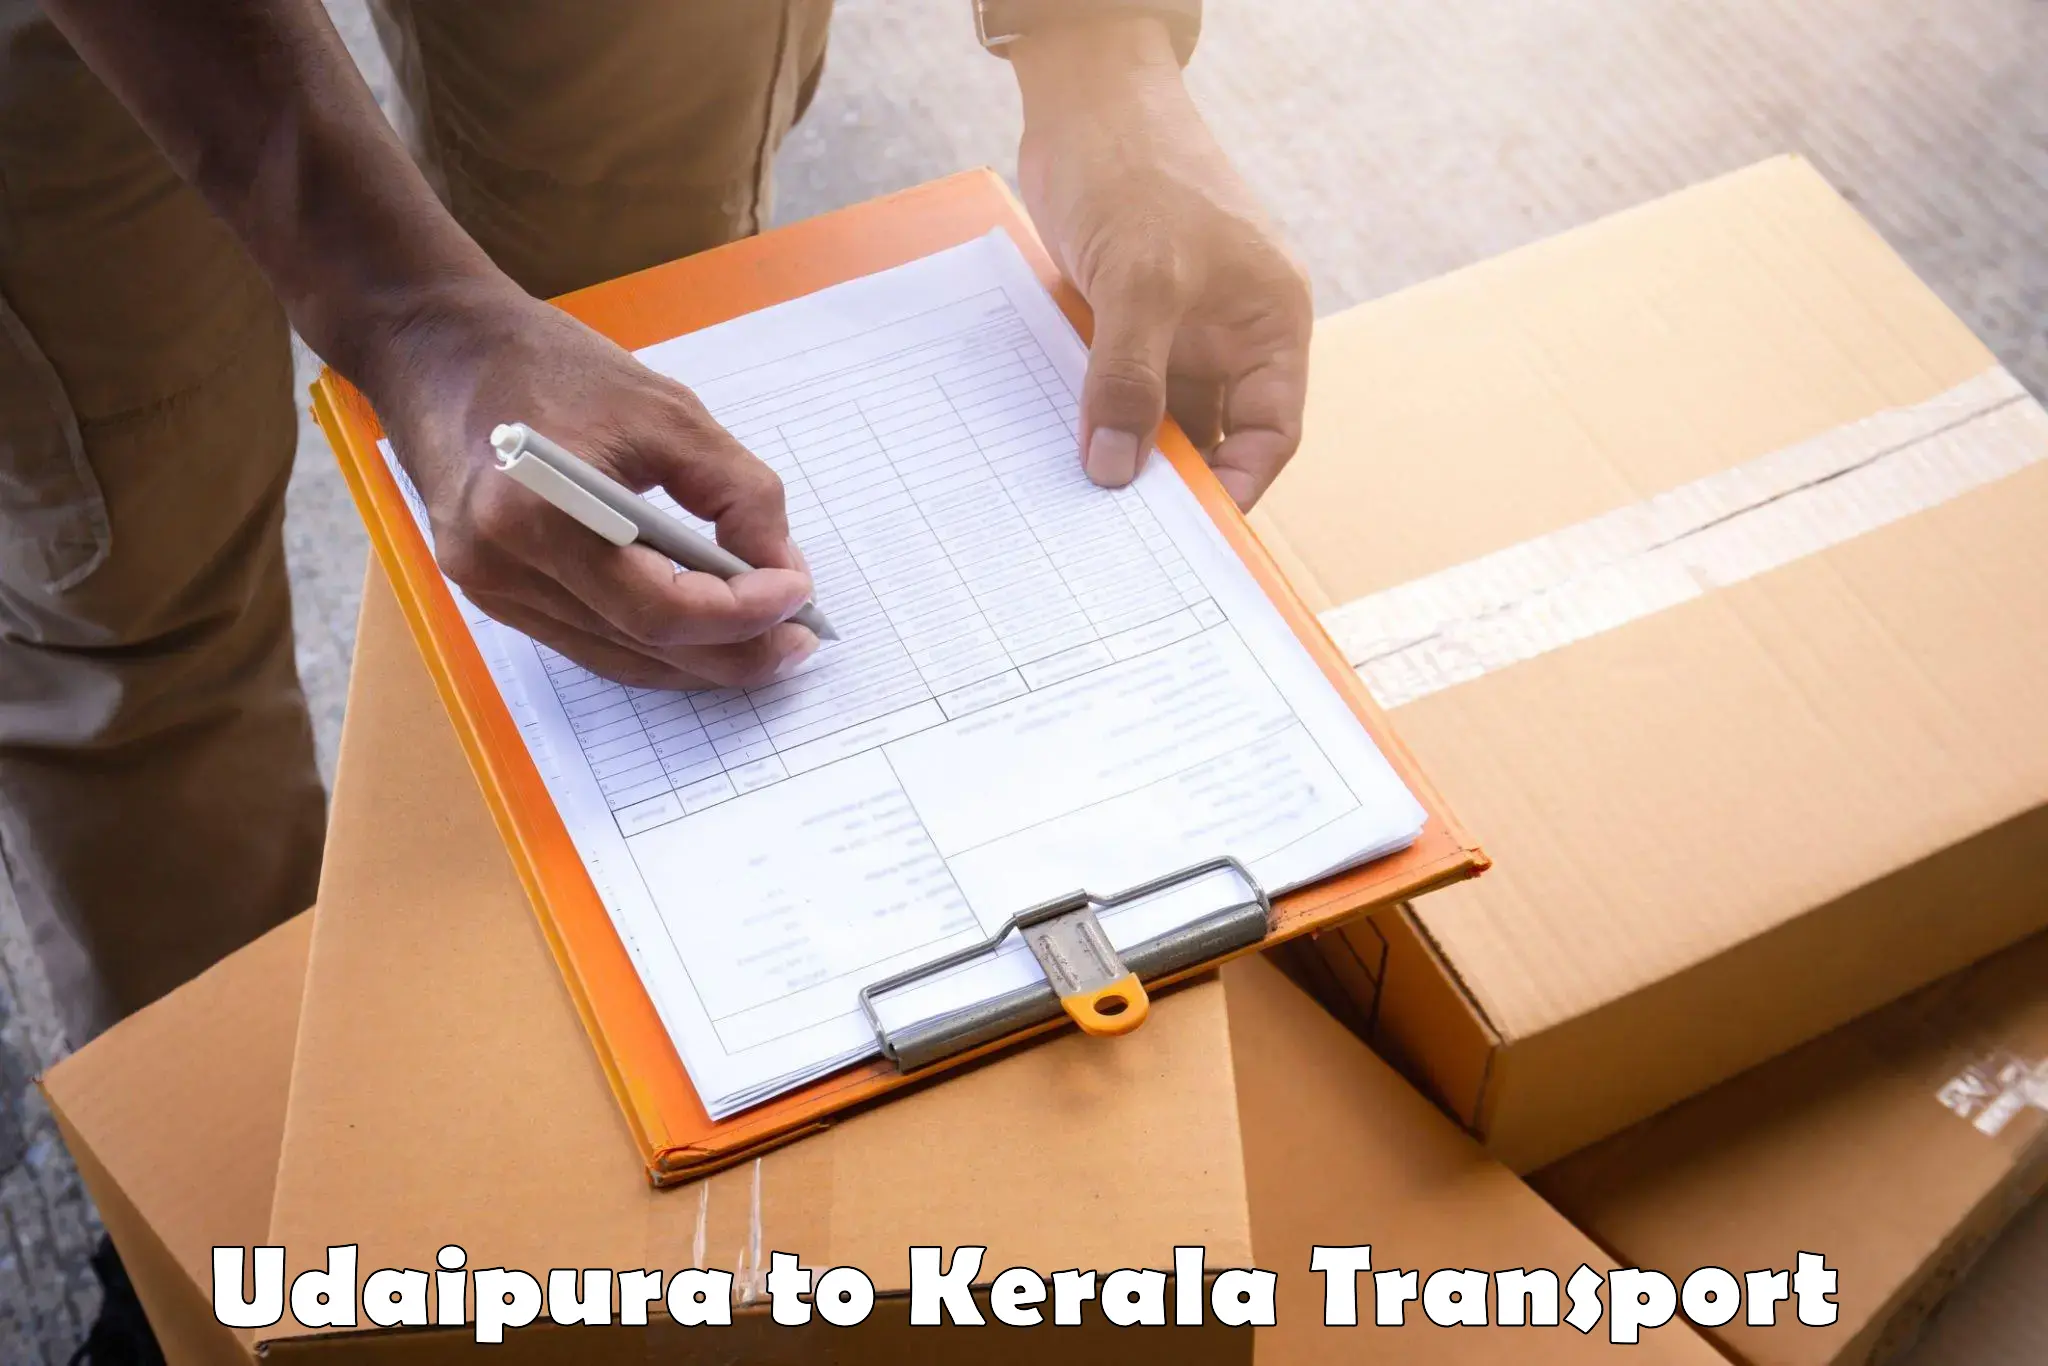 Delivery service Udaipura to Tiruvalla